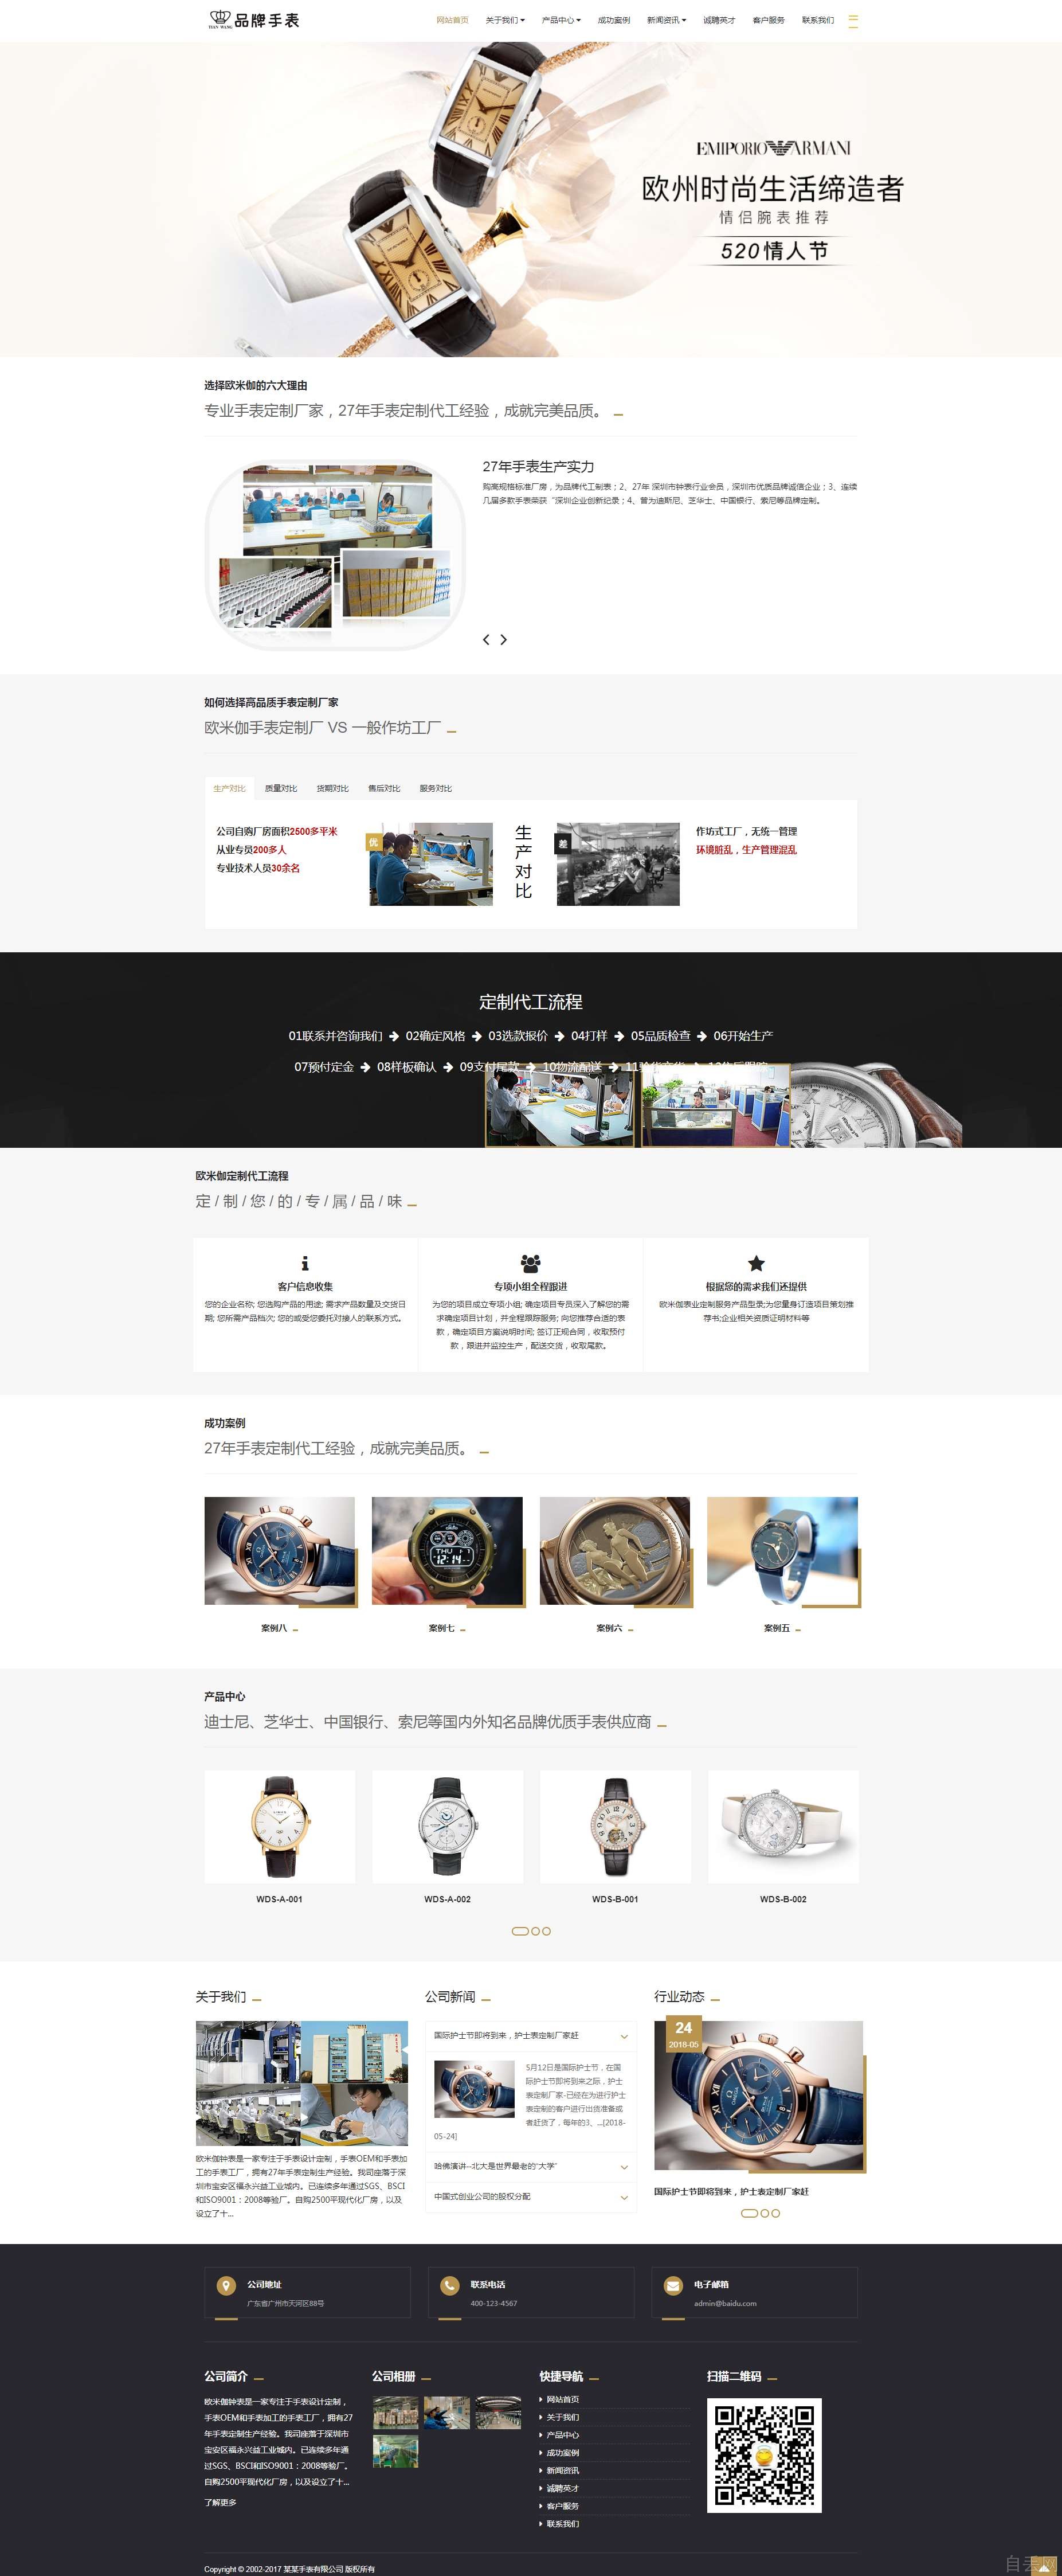 响应式品牌钟表手表奢侈品类织梦dedecms网站建设模板(自适应手机端)